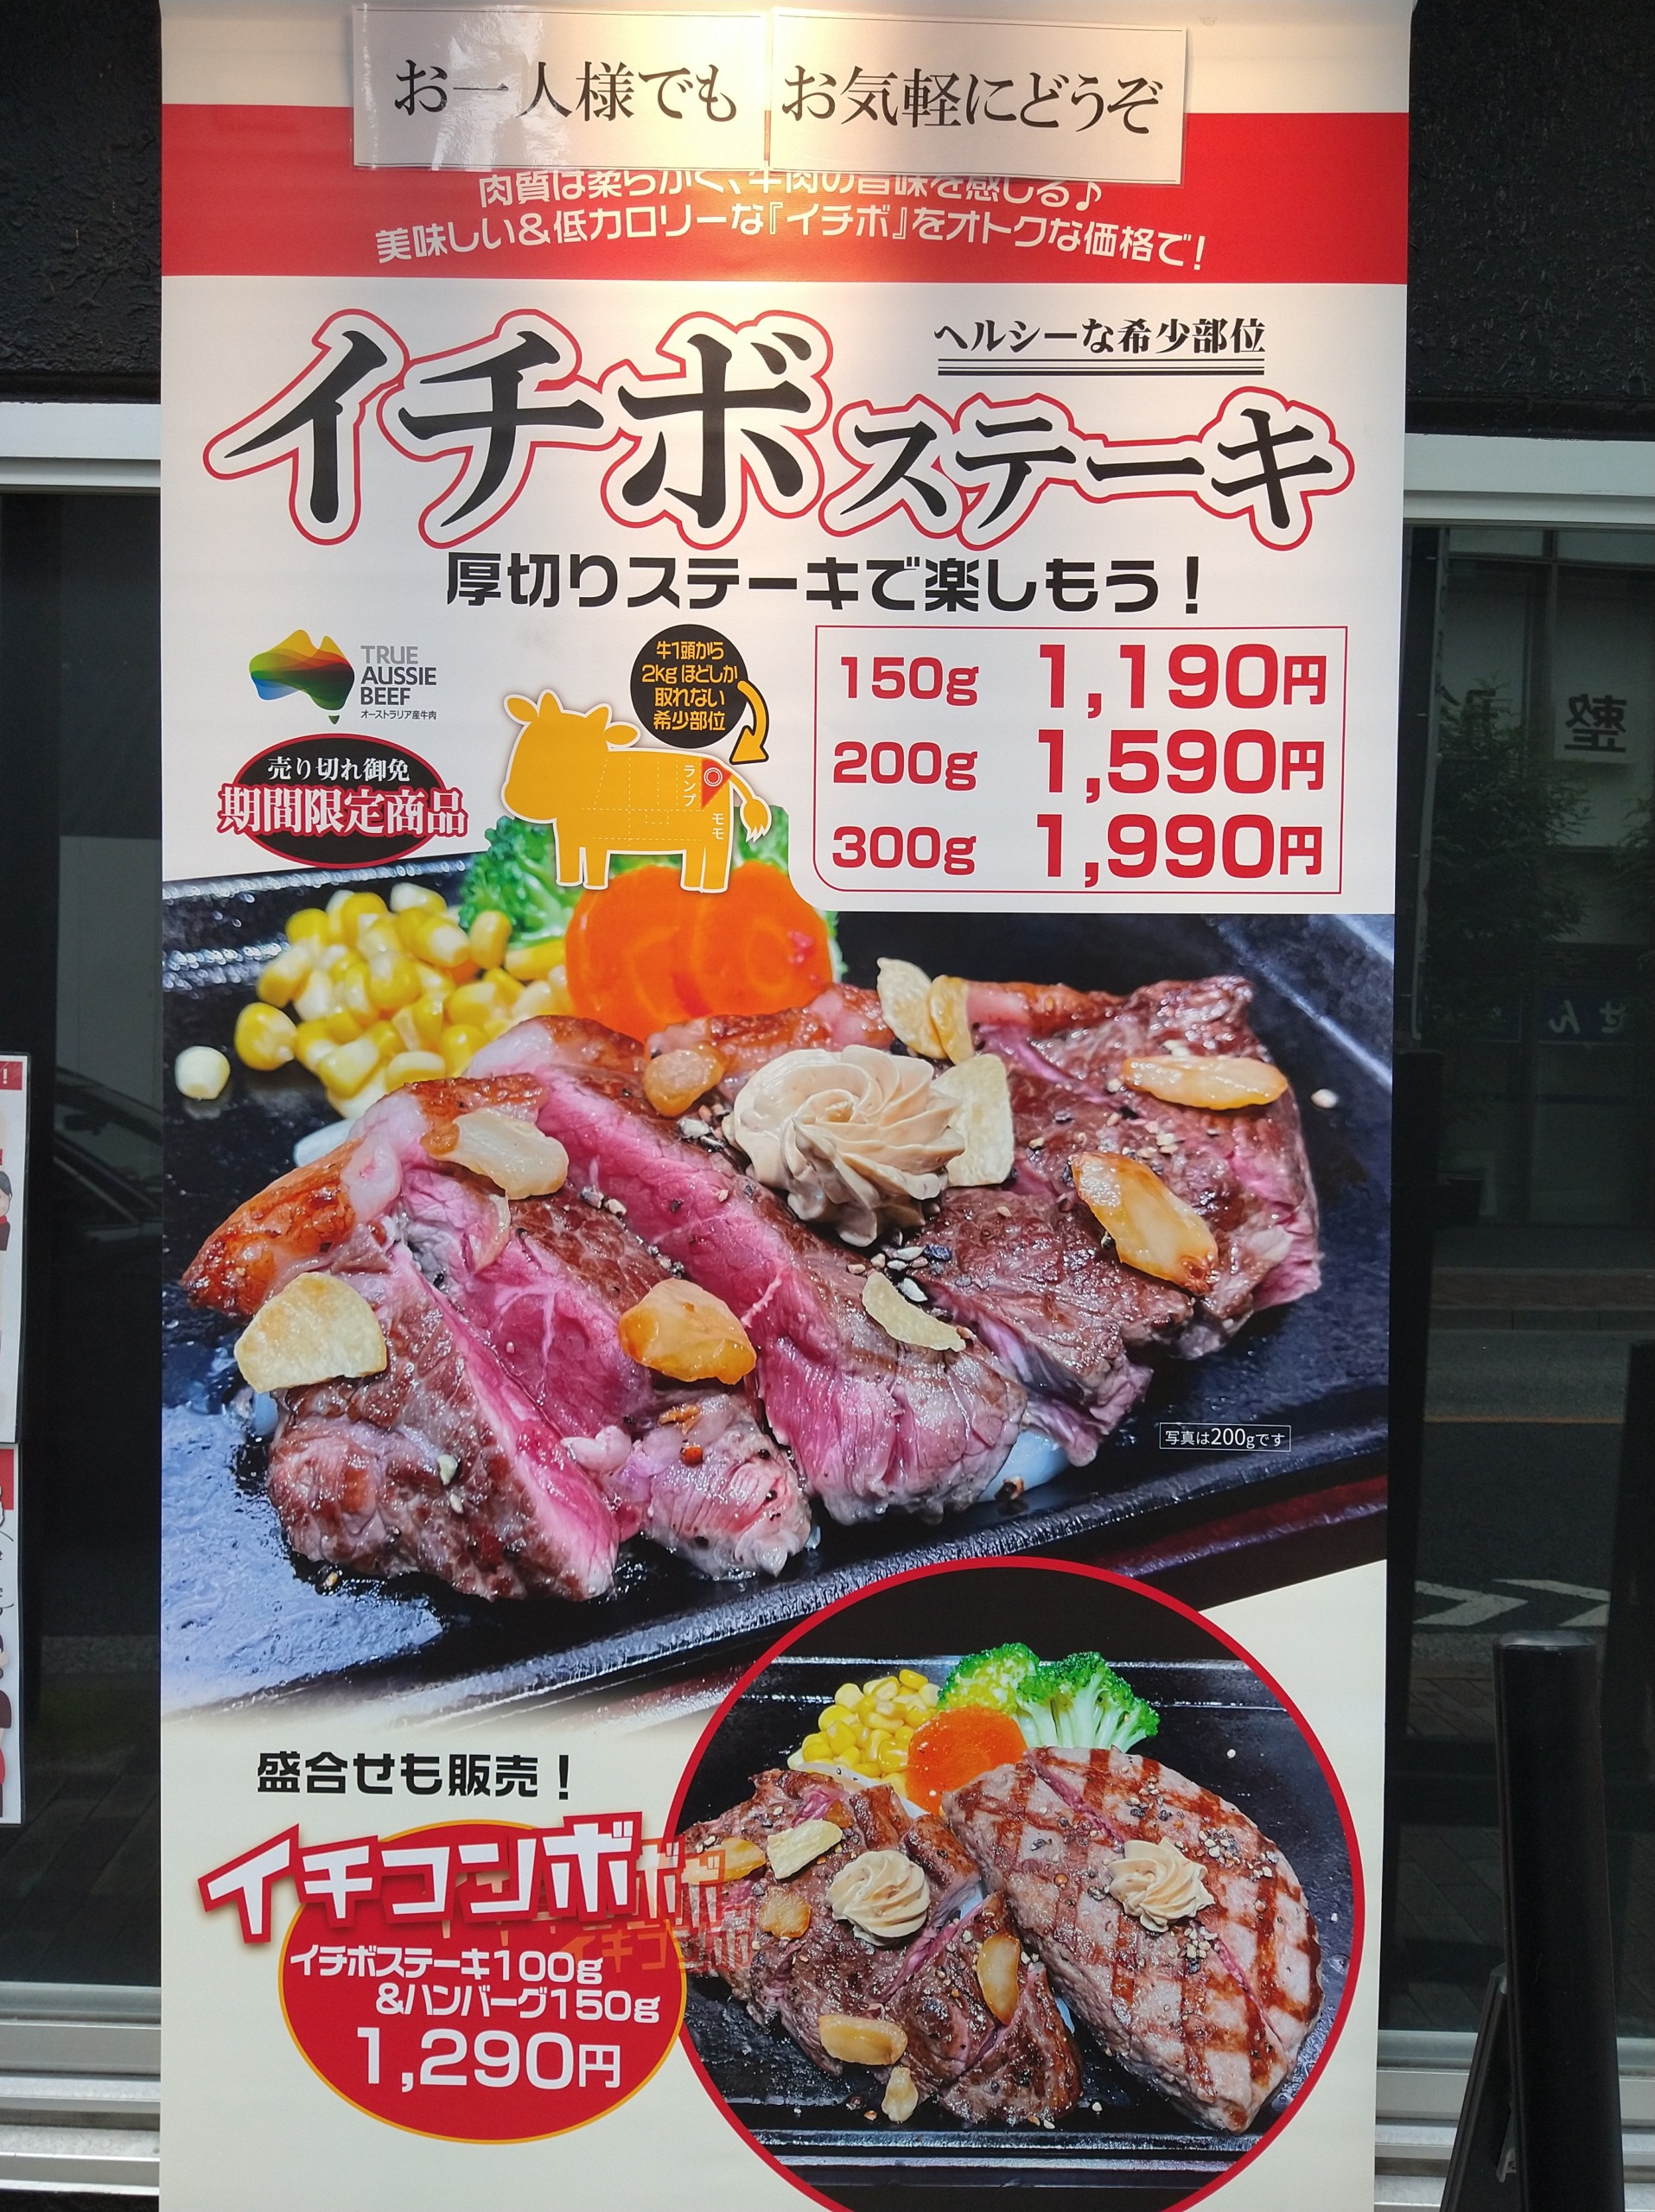 ikinari-stake-chofu-menu01